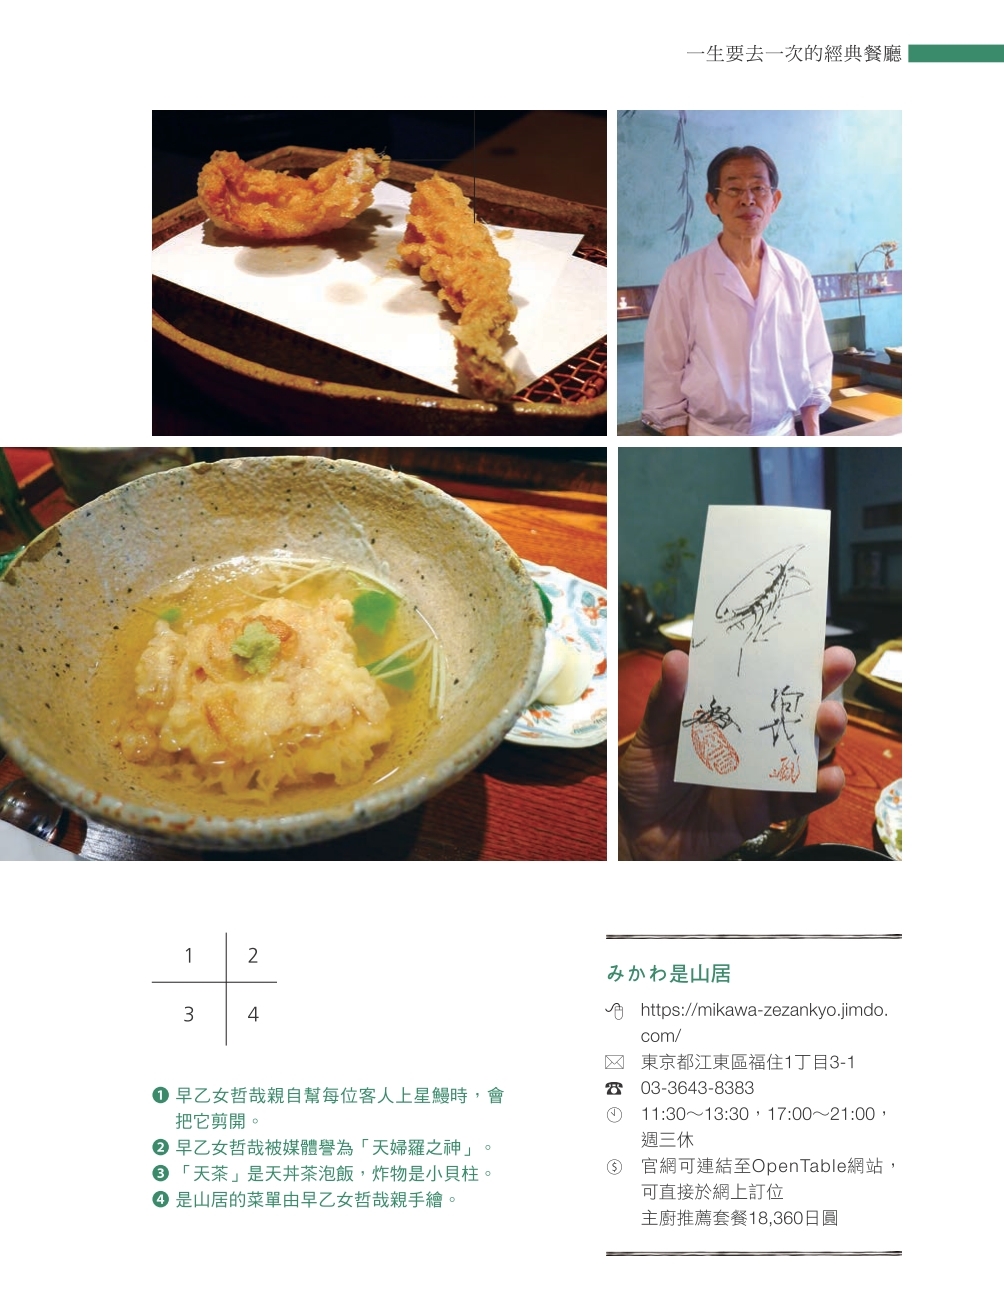 賞味東京：從味蕾感受東京必訪的66間主題餐廳